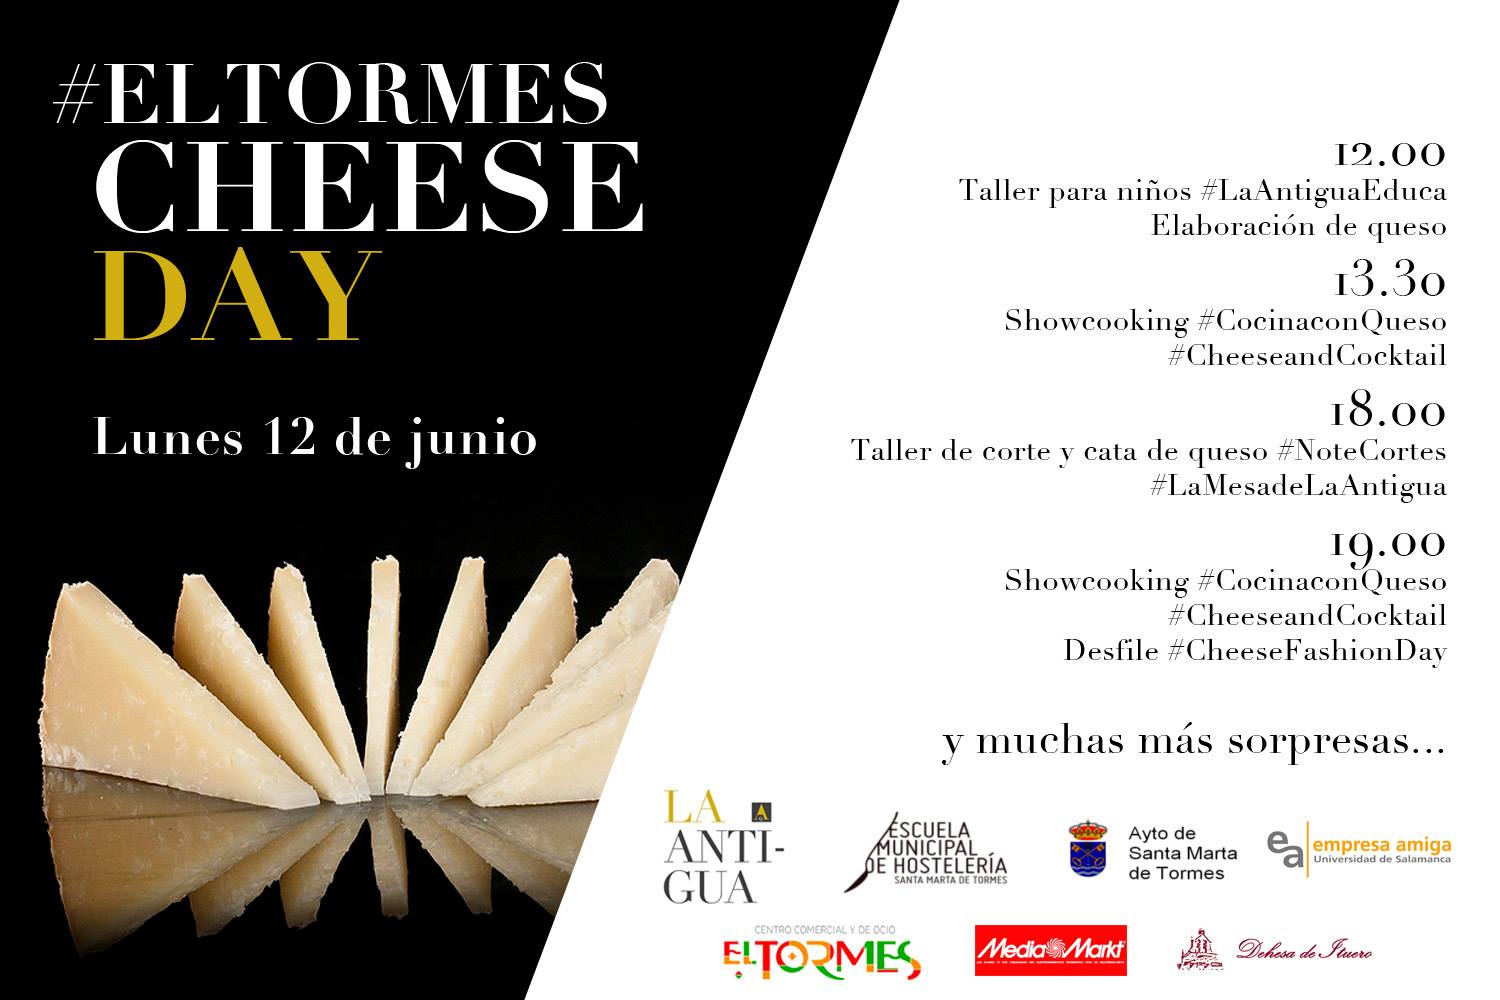 Cheese Day, Centro Comercial El Tormes, Santa Marta de Tormes